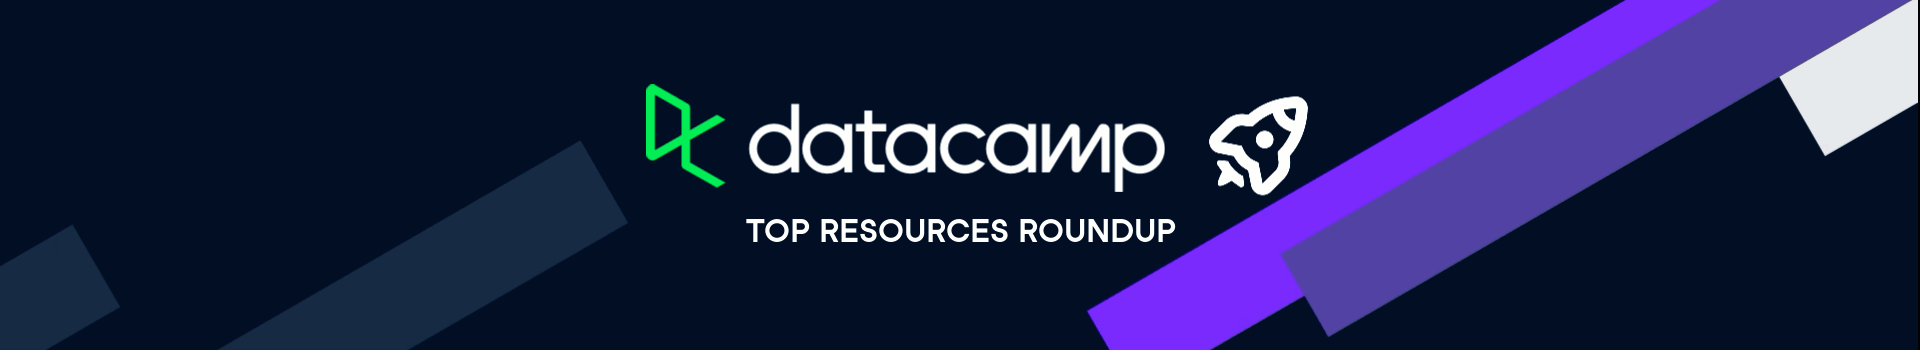 DataCamp: Top resources roundup banner